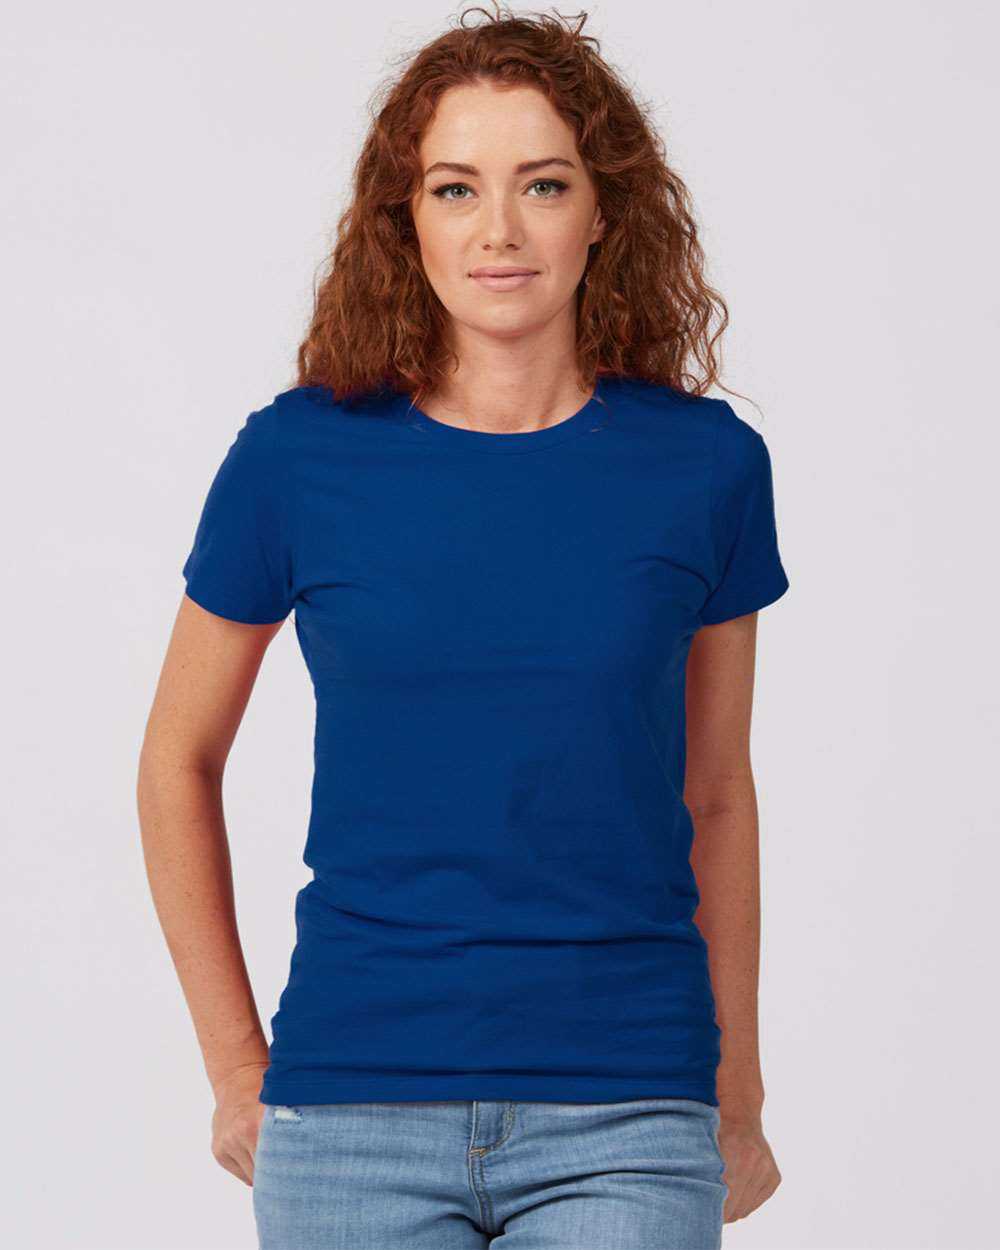 Tultex 516 Women's Premium Cotton T-Shirt - Royal - HIT a Double